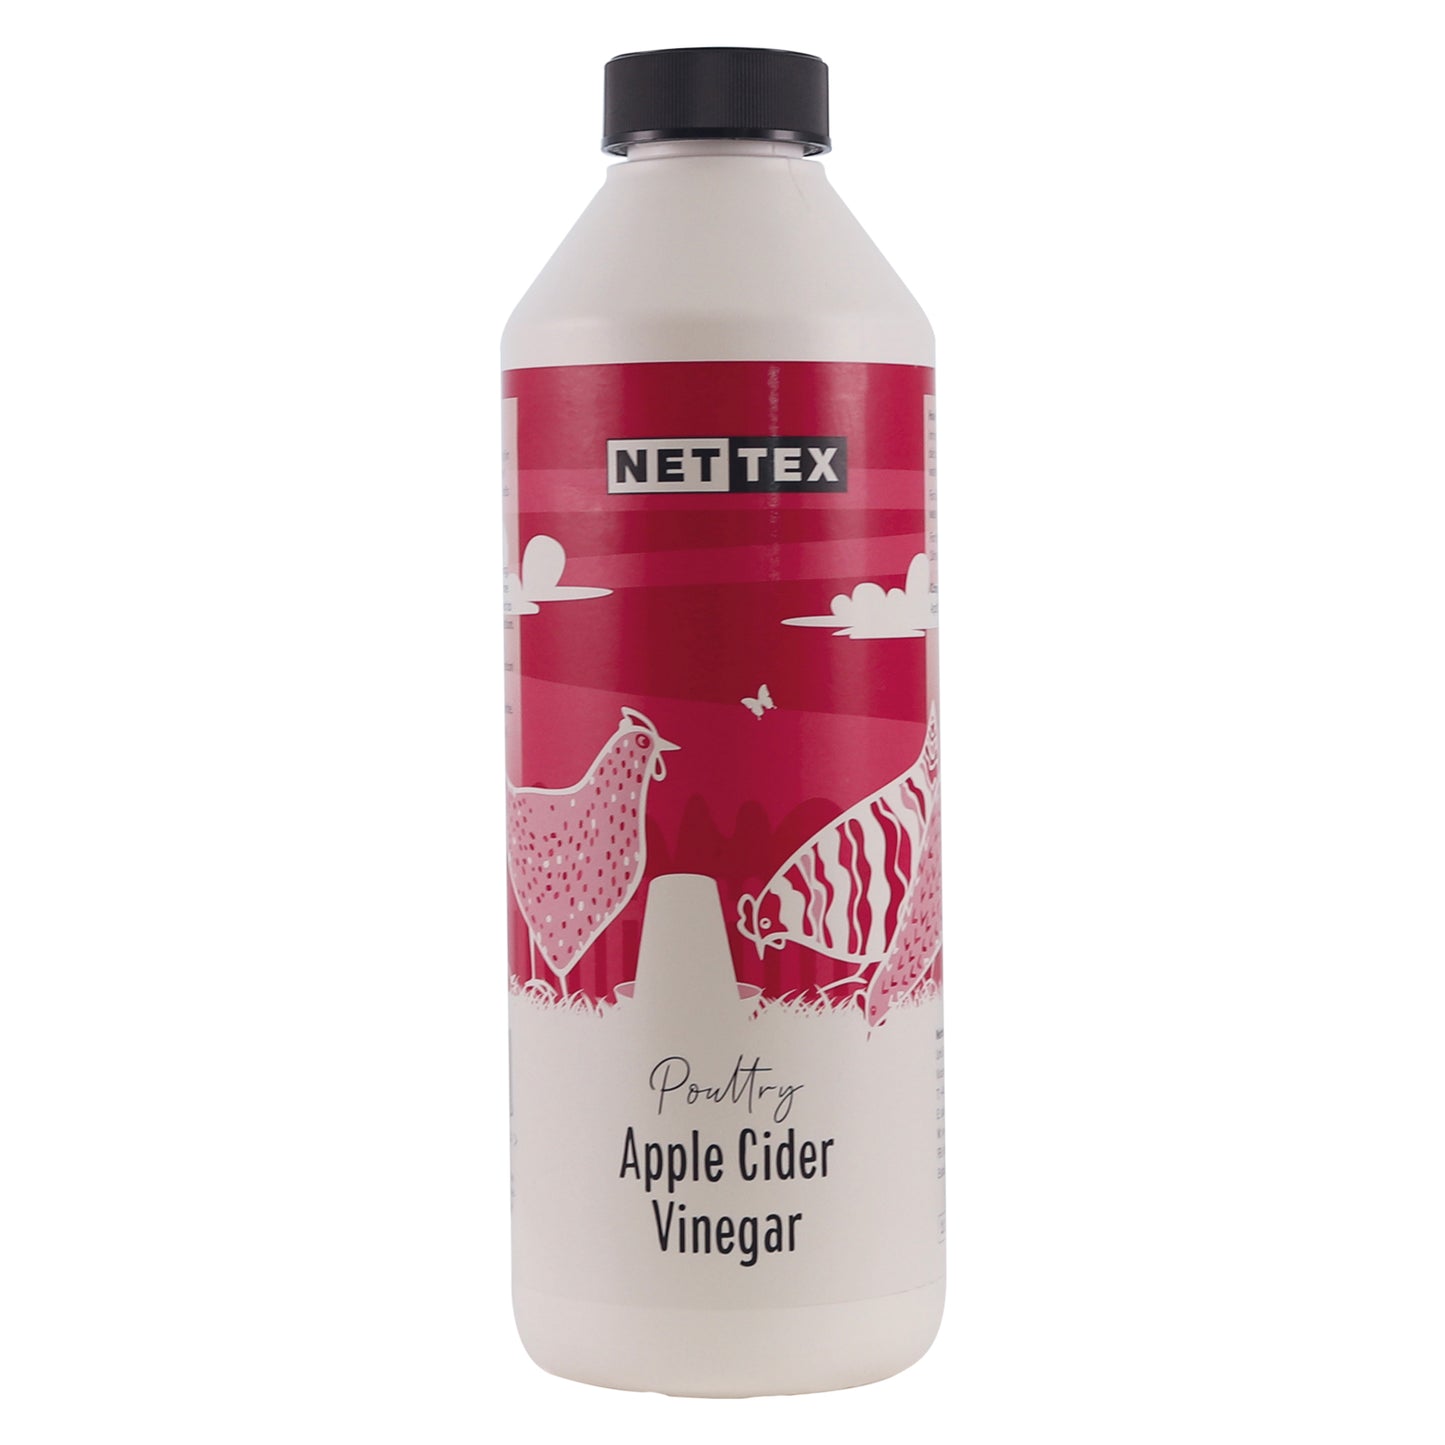 Nettex Poultry Apple Cider Vinegar